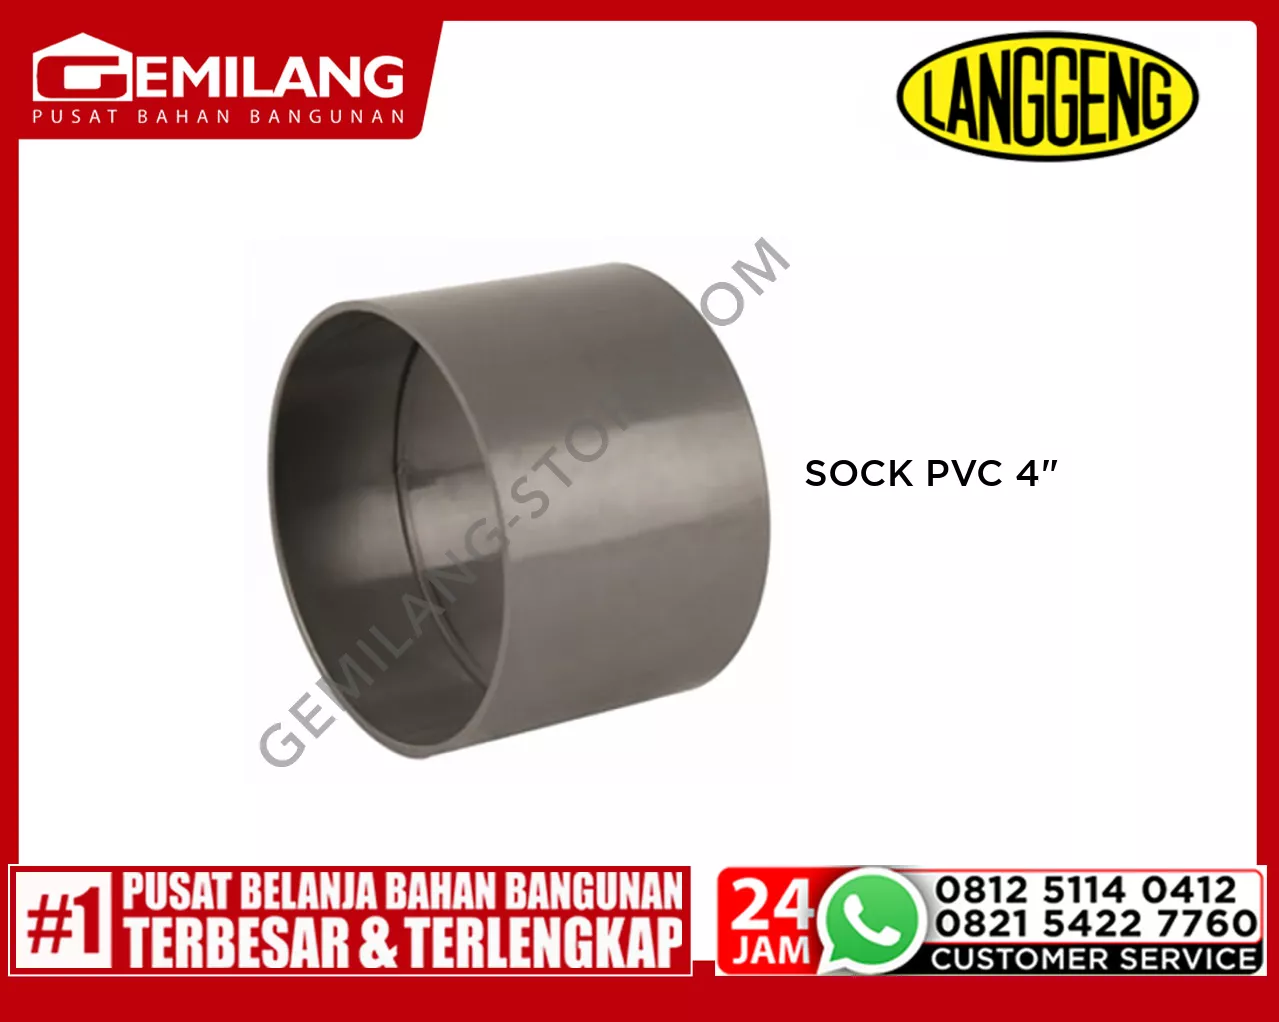 LANGGENG SOCK PVC 4inch